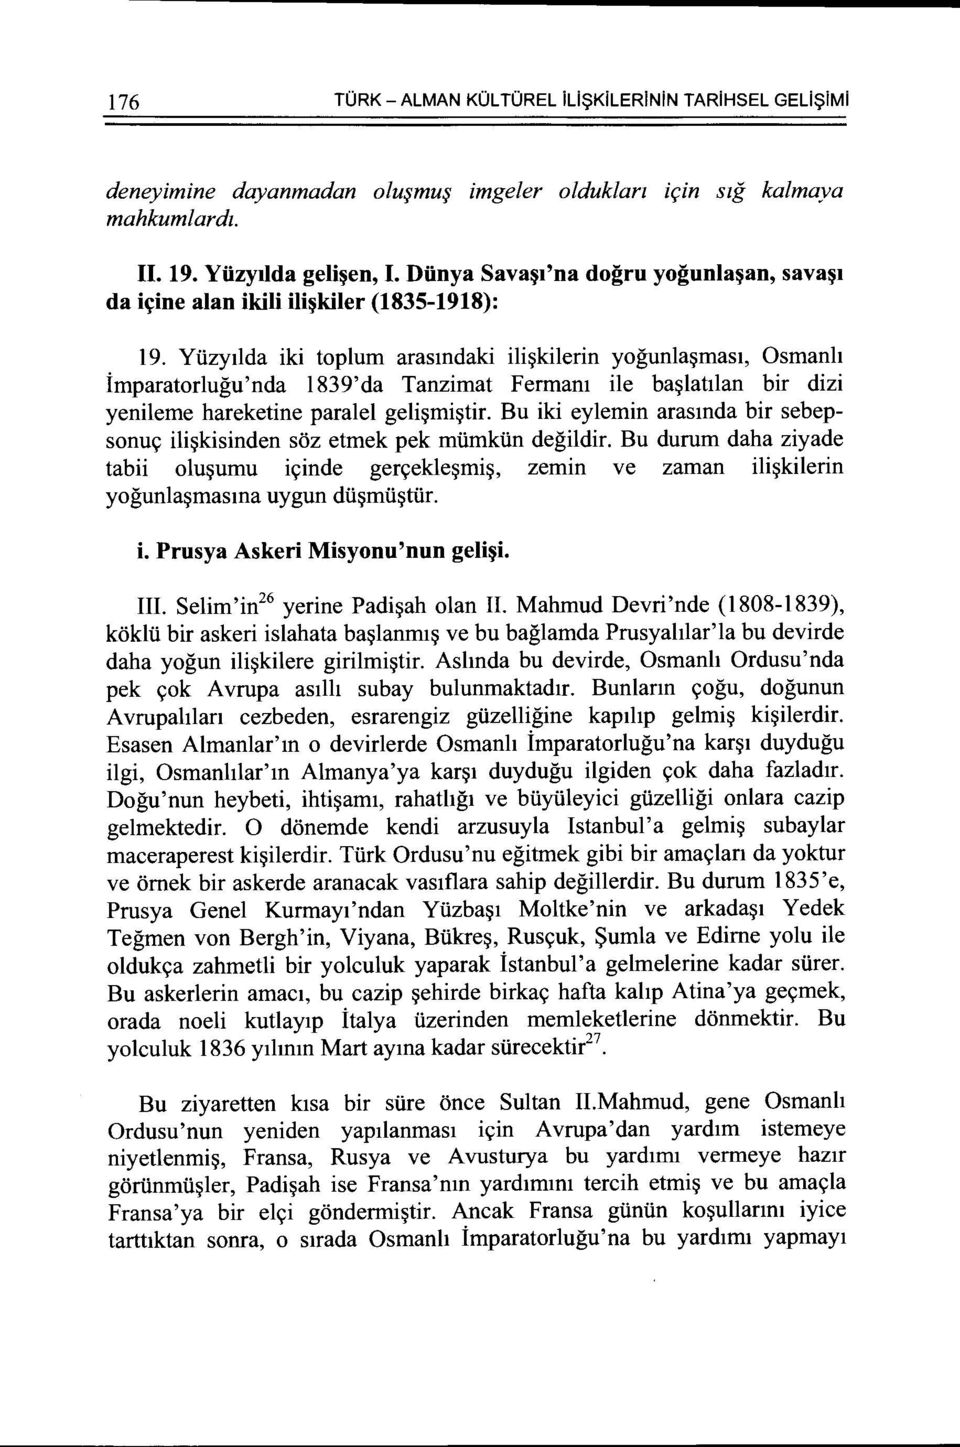 Yuzytlda iki toplum arasmdaki ili~kilerin yogunla~mast, Osmanh imparatorlugu'nda 1839'da Tanzimat Fermam ile ba~lattlan bir dizi yenileme hareketine paralel geli~mi~tir.